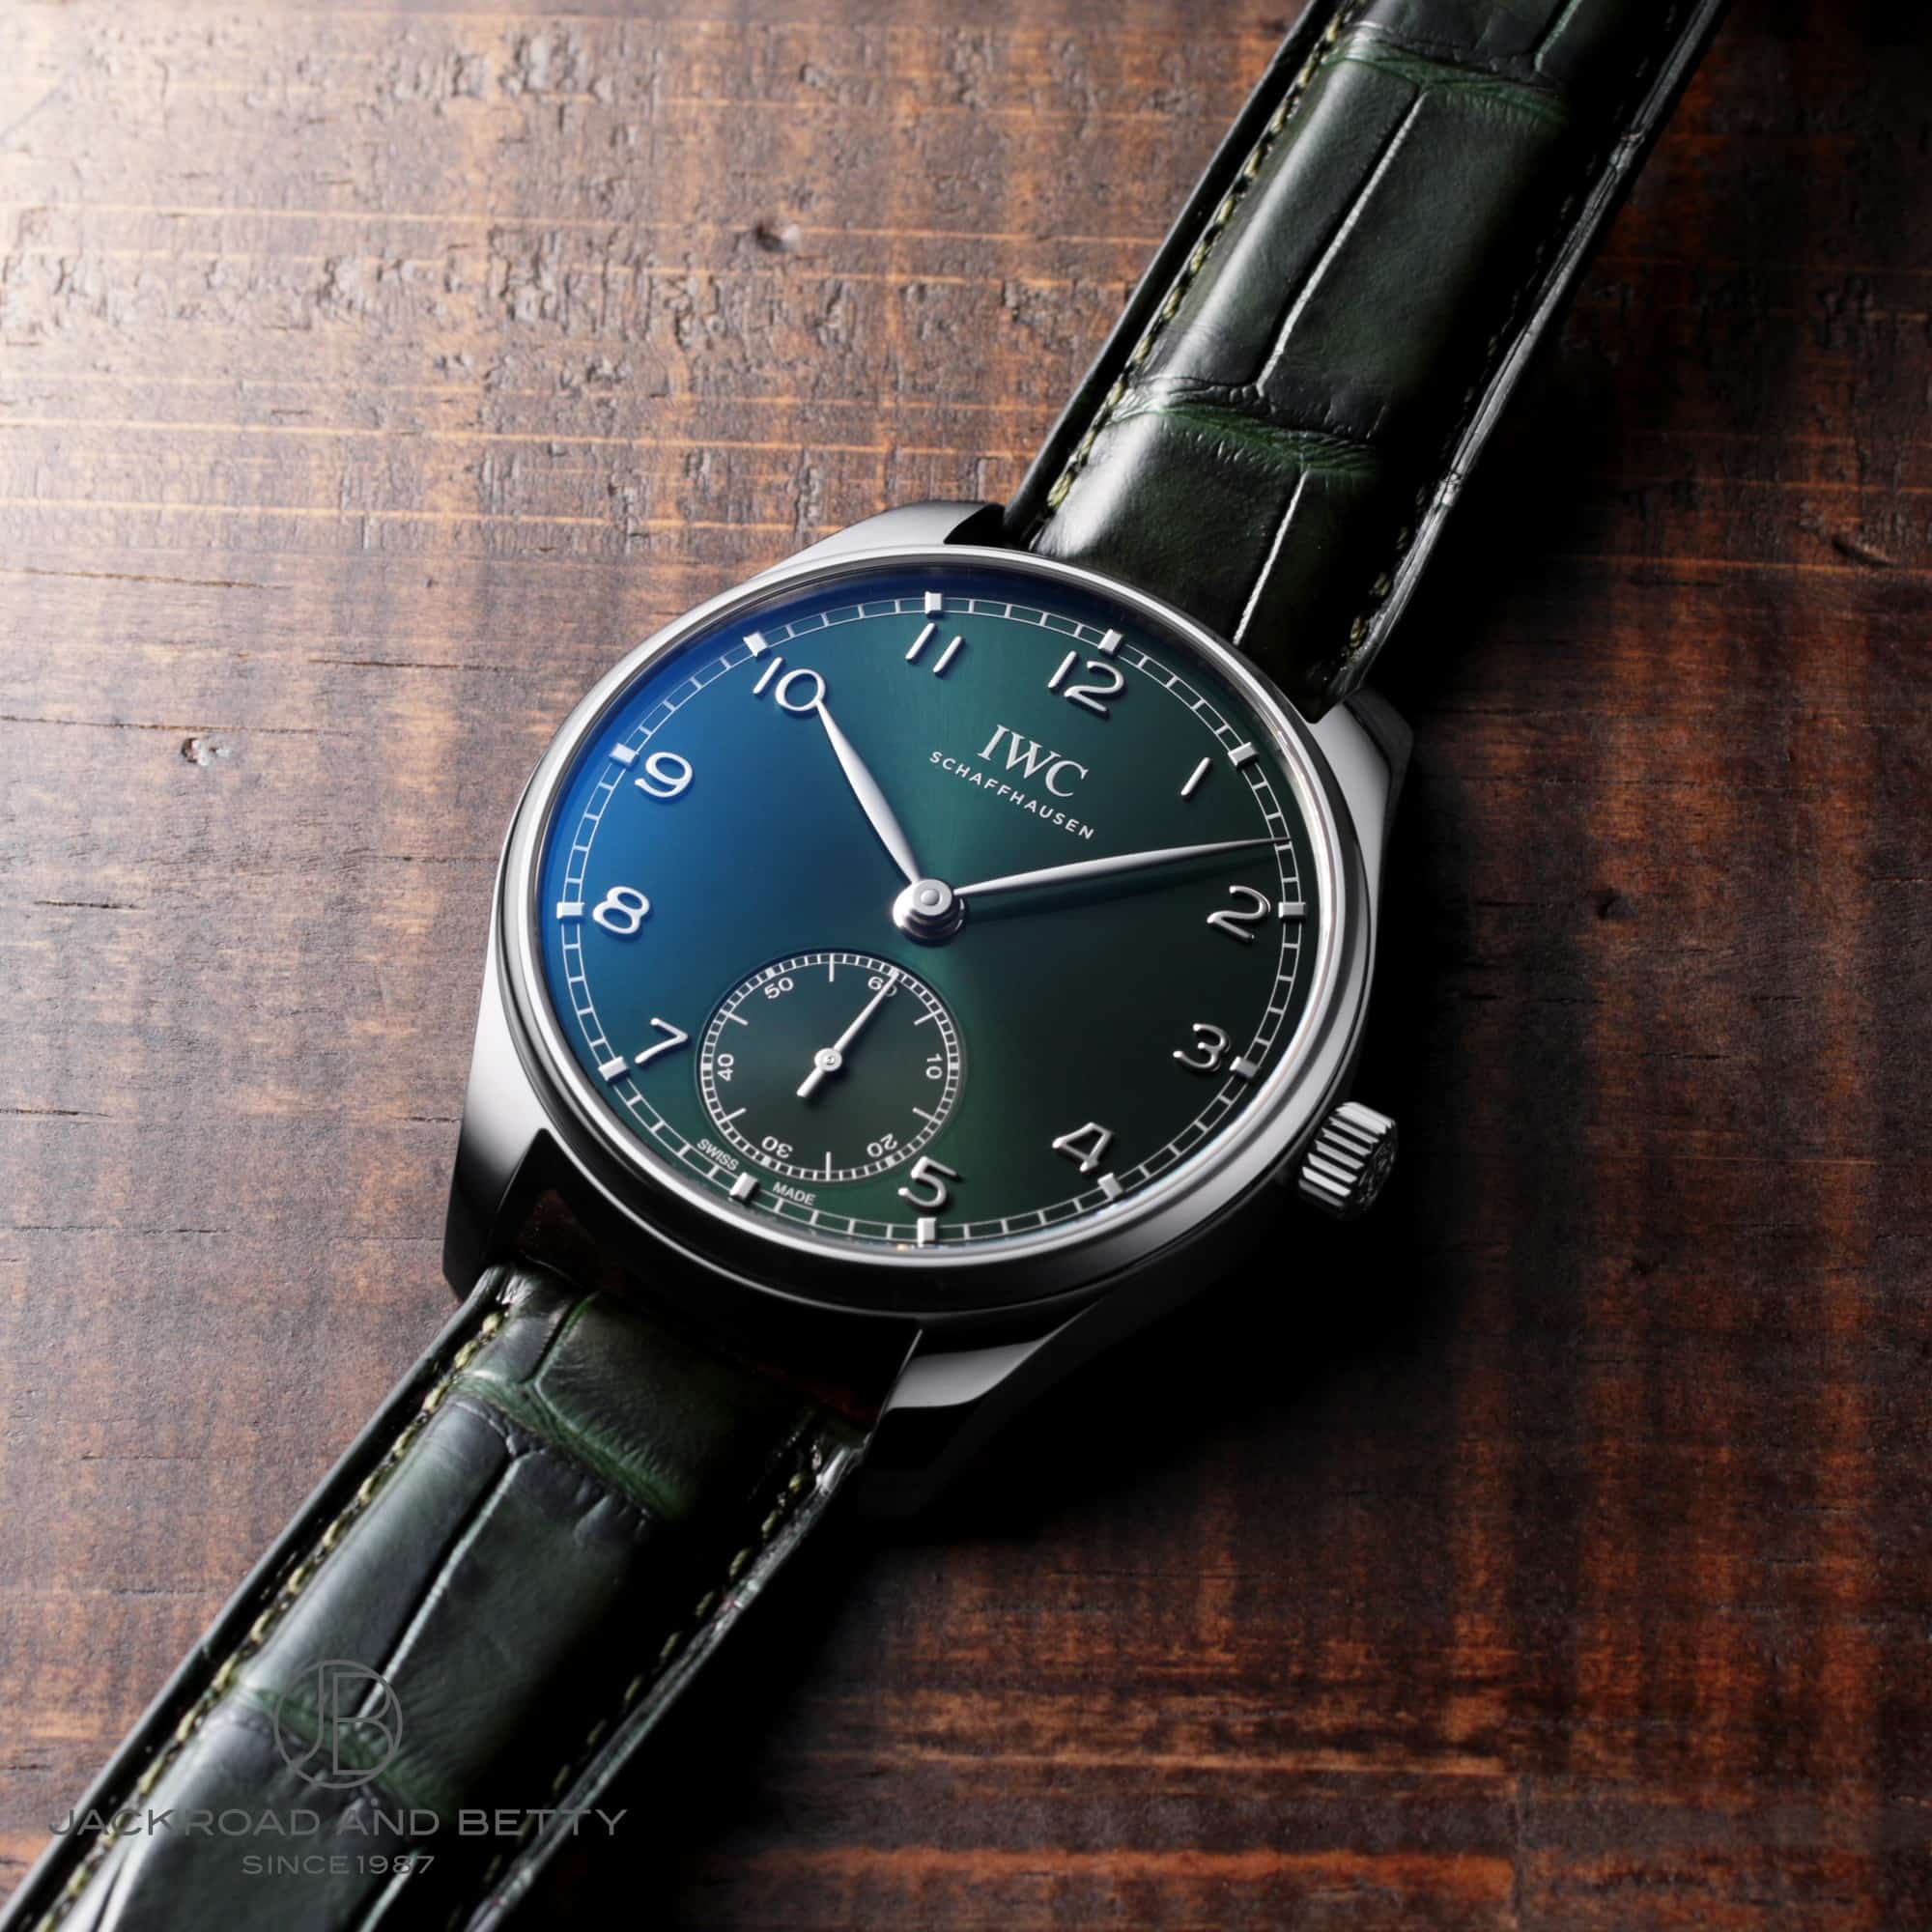 インターナショナルウォッチカンパニー IWC IW358310 グリーン メンズ 腕時計